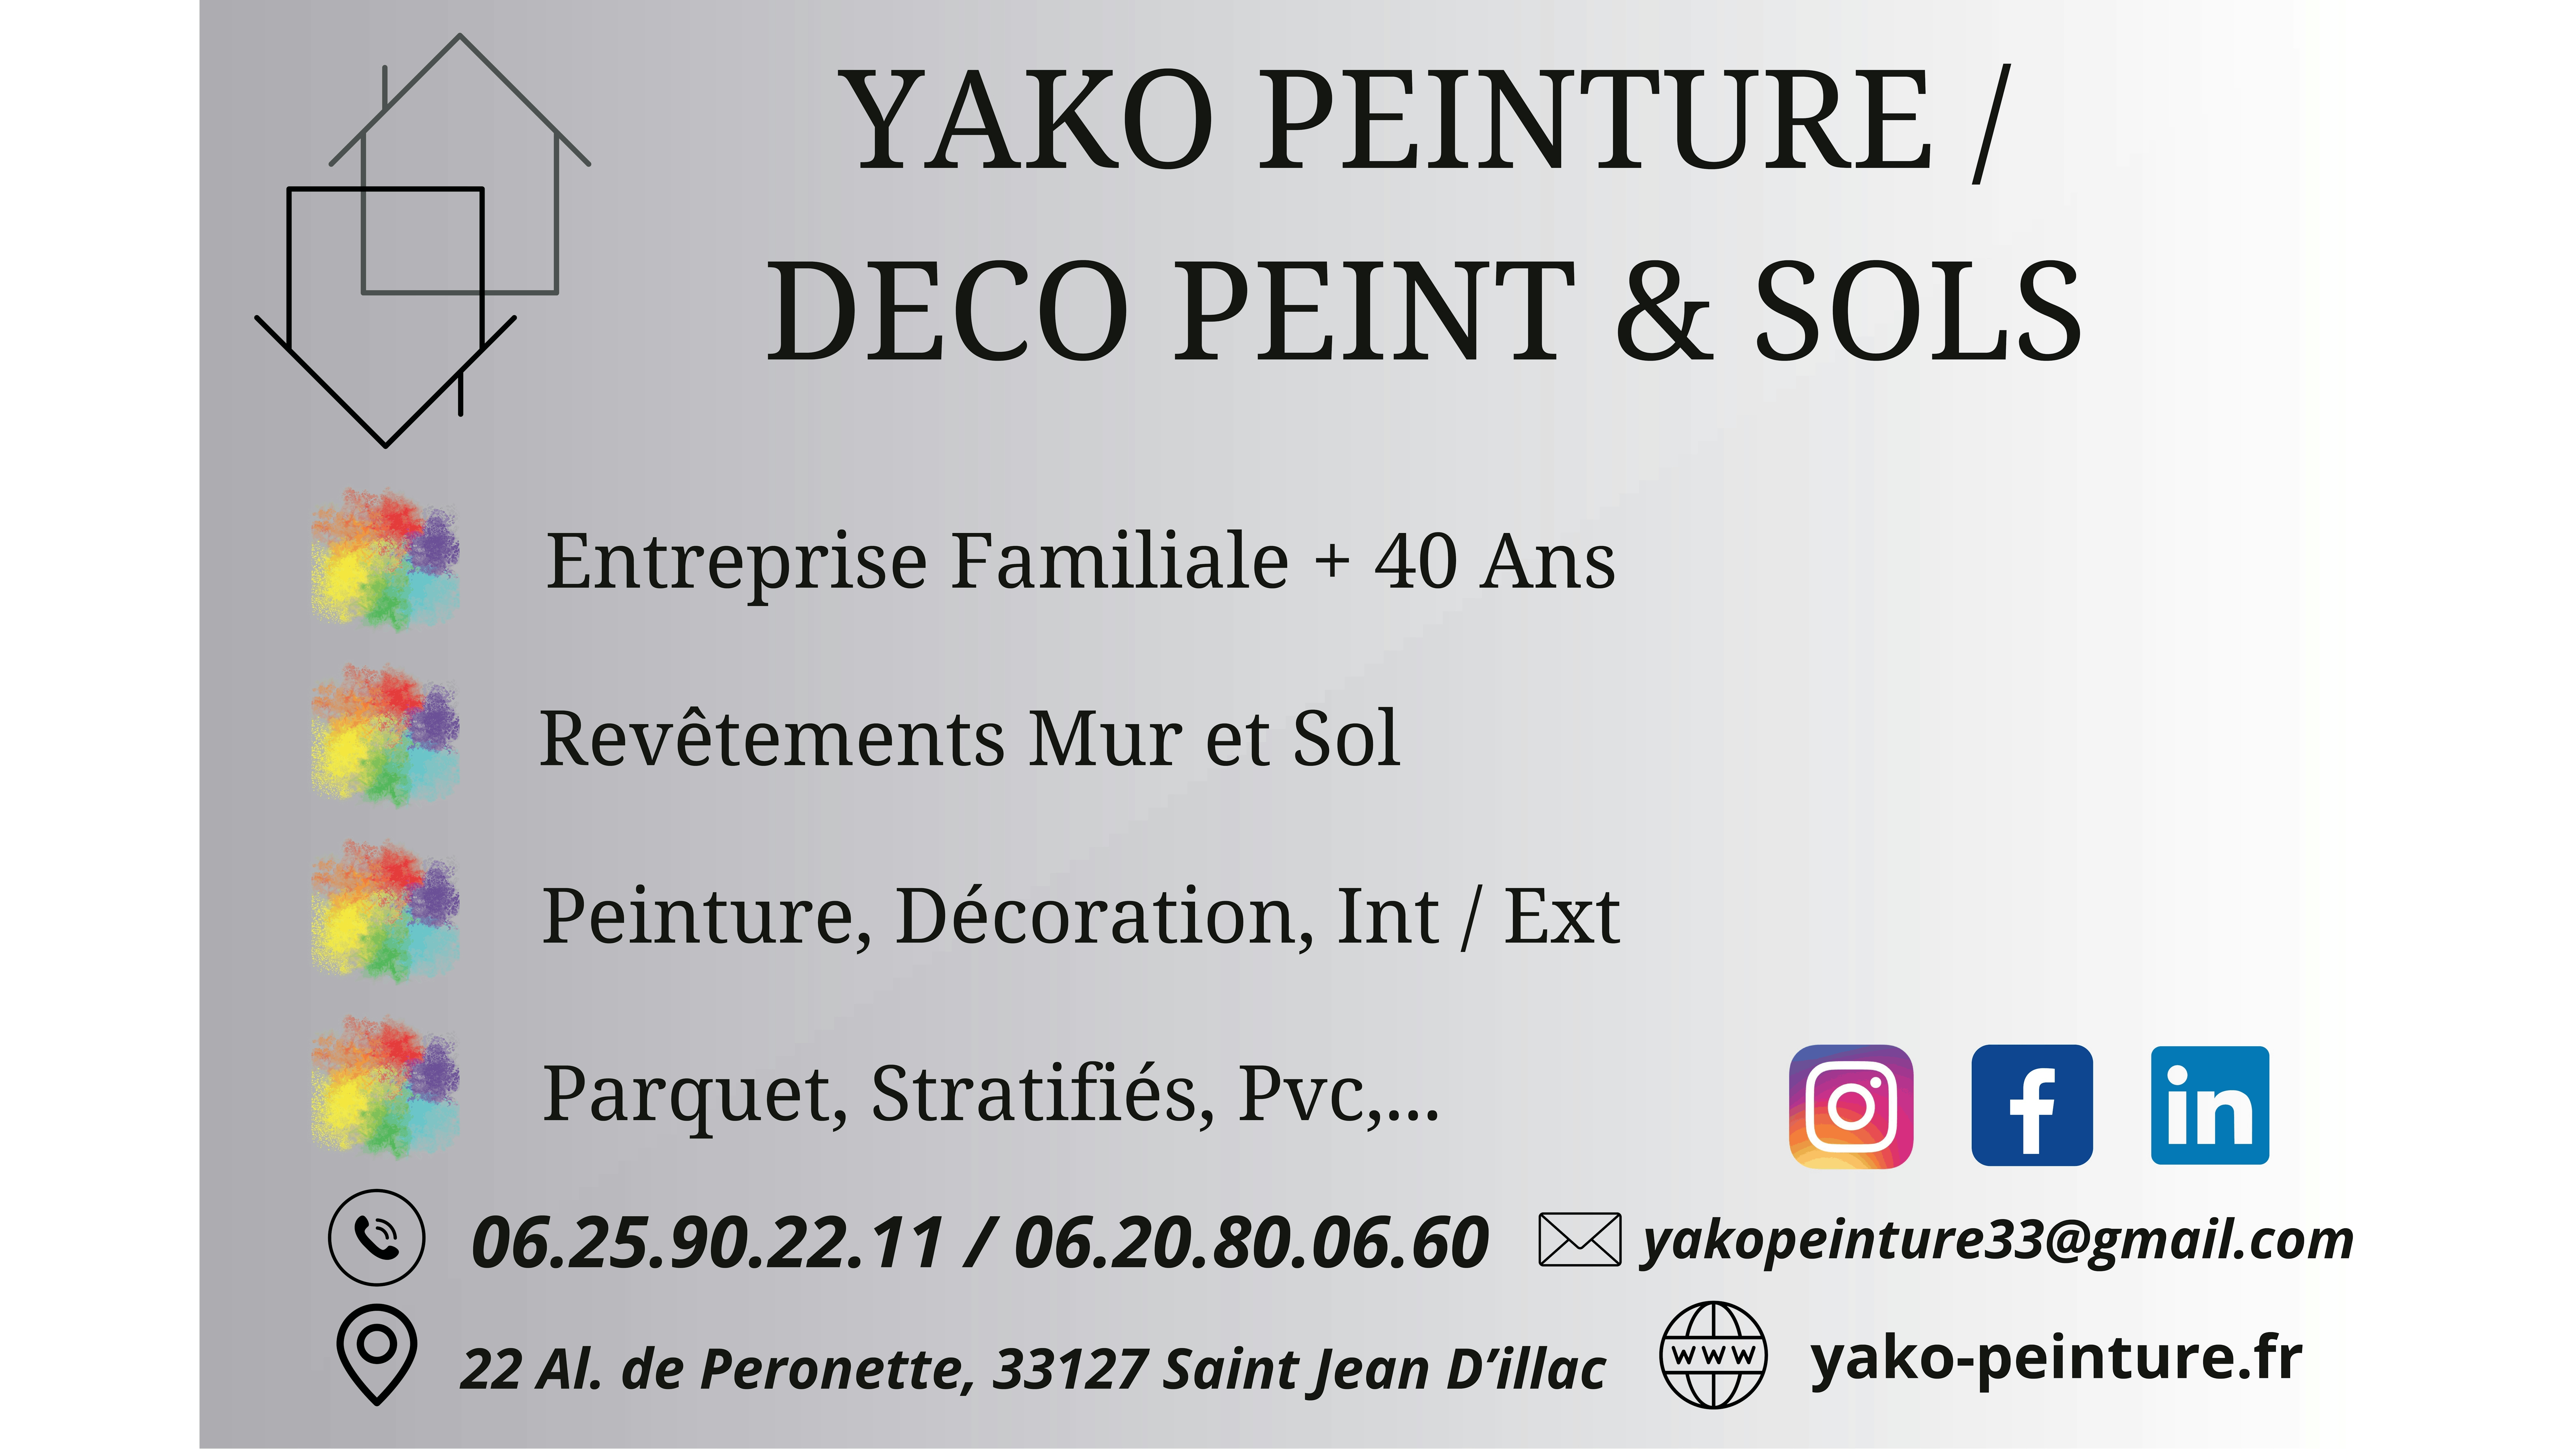 Yako Peinture / Deco Peint et Sols 